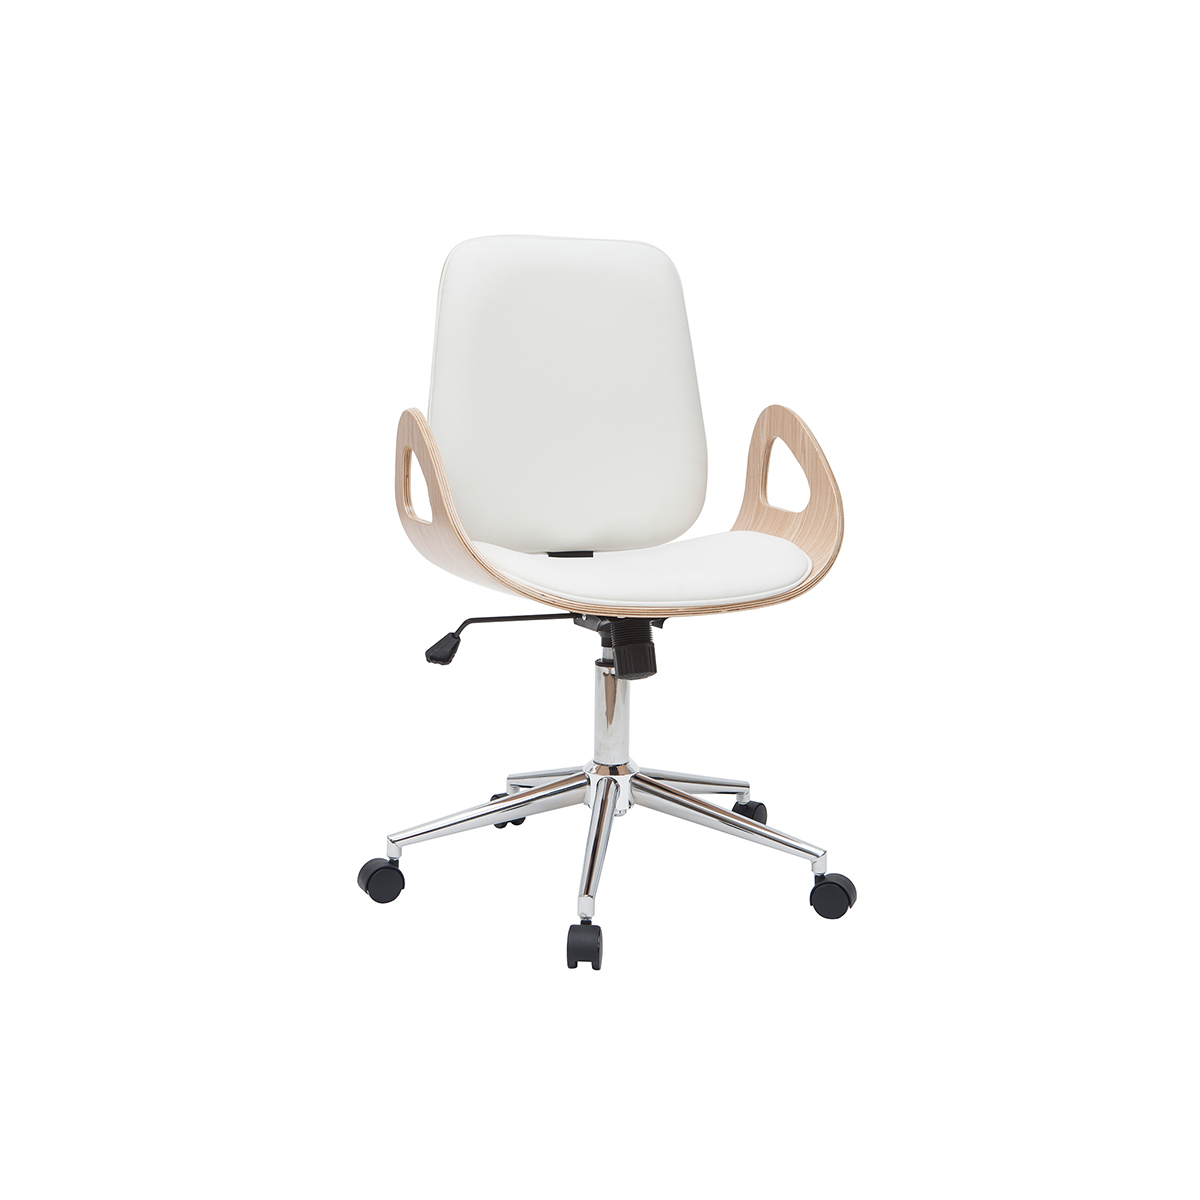 Chaise de bureau à roulettes design blanc, bois clair et acier chromé GLORY vue1